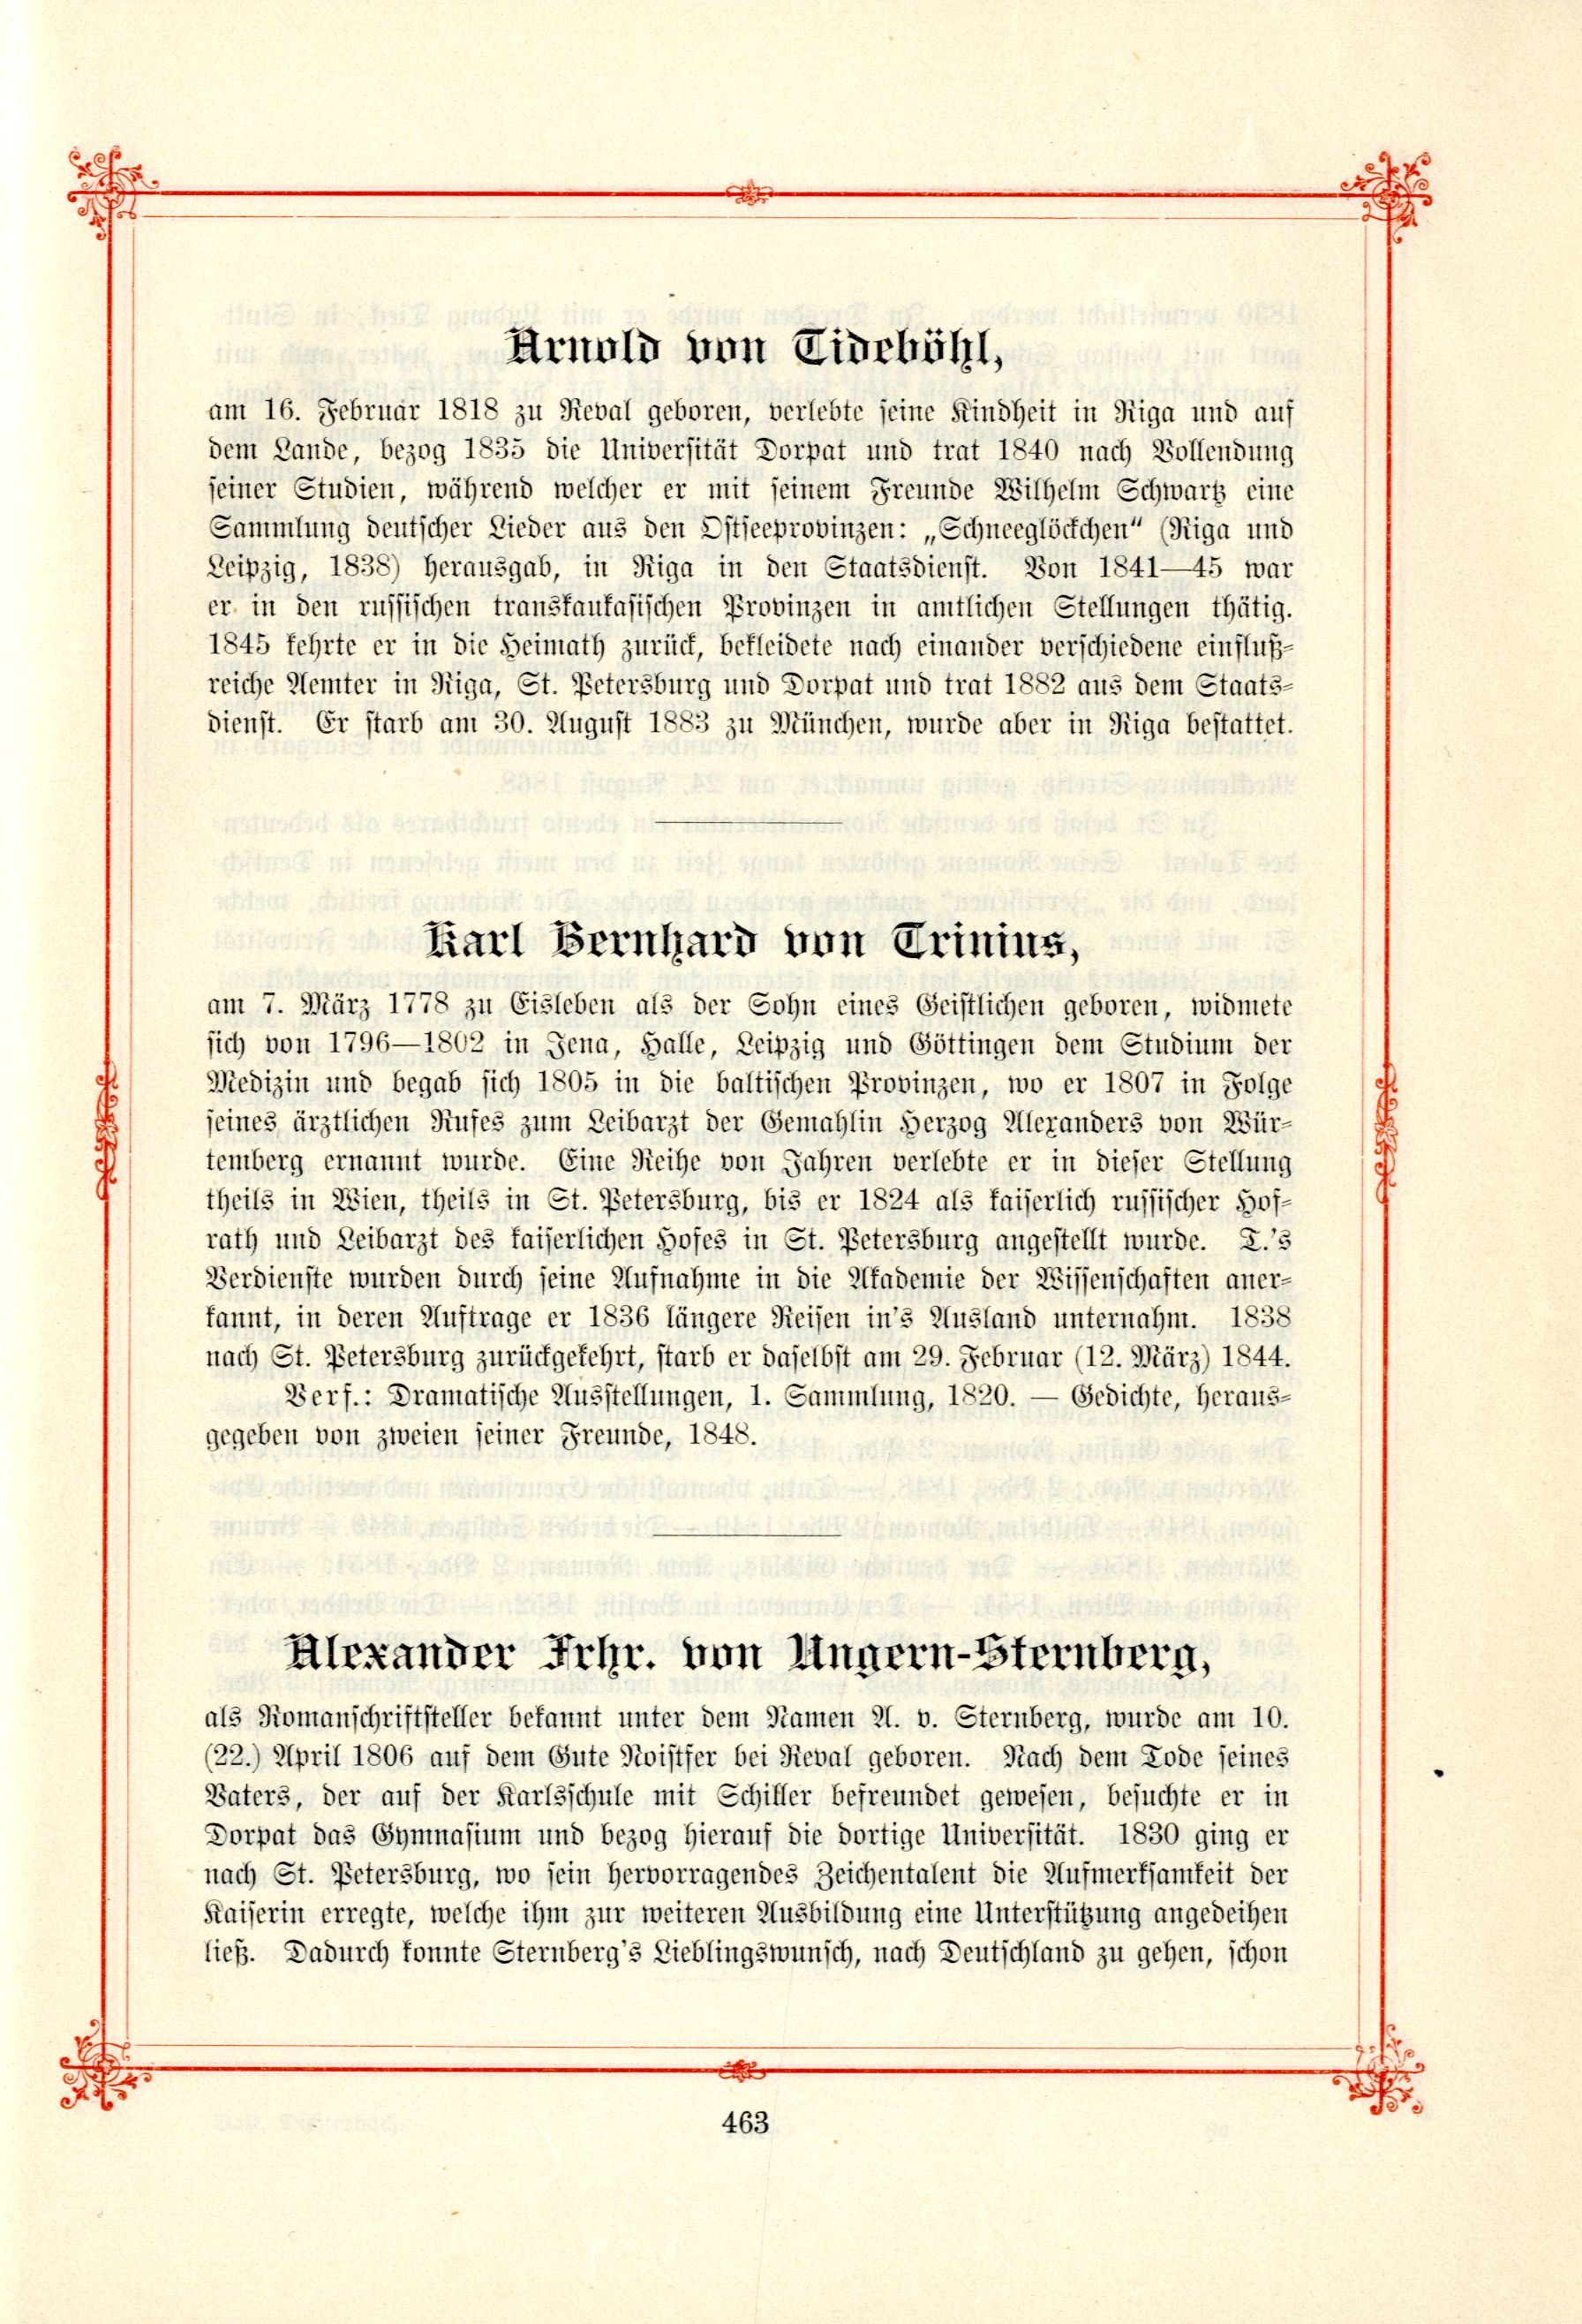 Karl Bernhard von Trinius (1895) | 1. (463) Main body of text